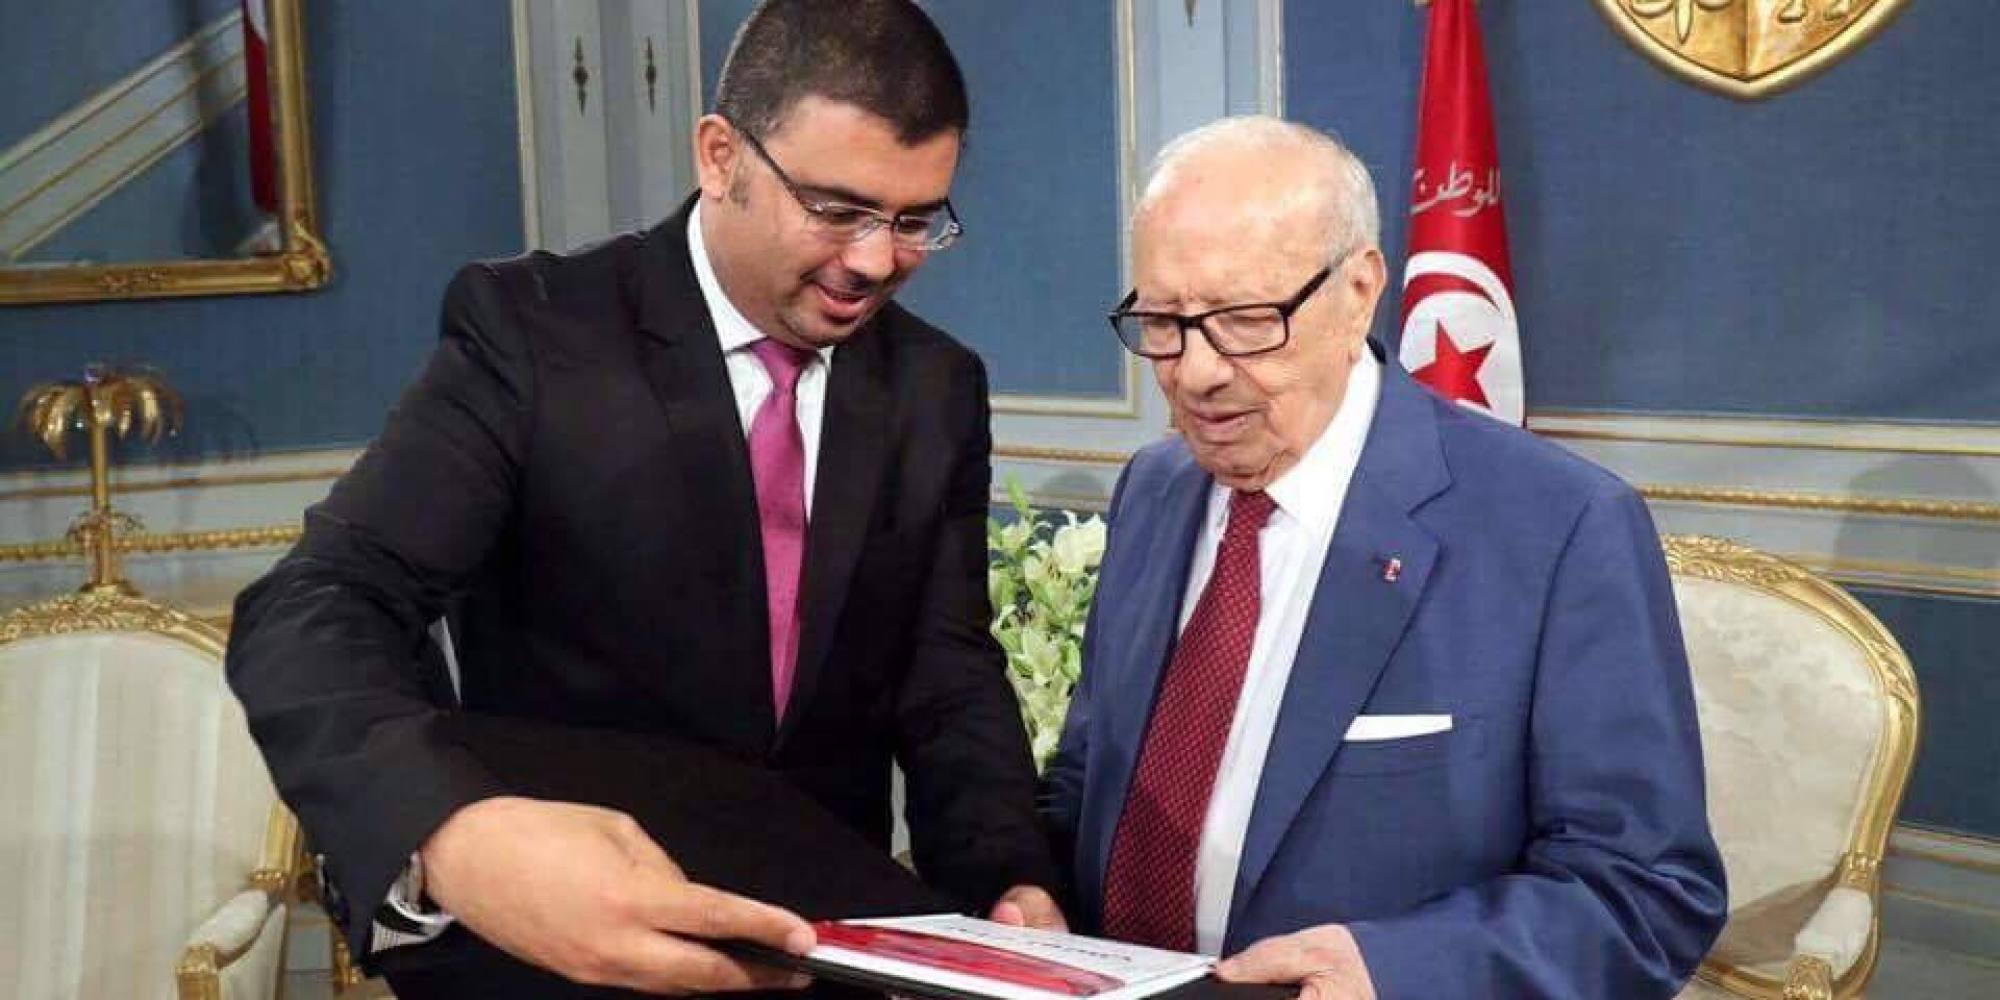 وصفهم بـ رعاع بن علي .. كتاب عن حزب الرئيس يشعل الخلاف بين قيادي في  نداء تونس  والمعارضة